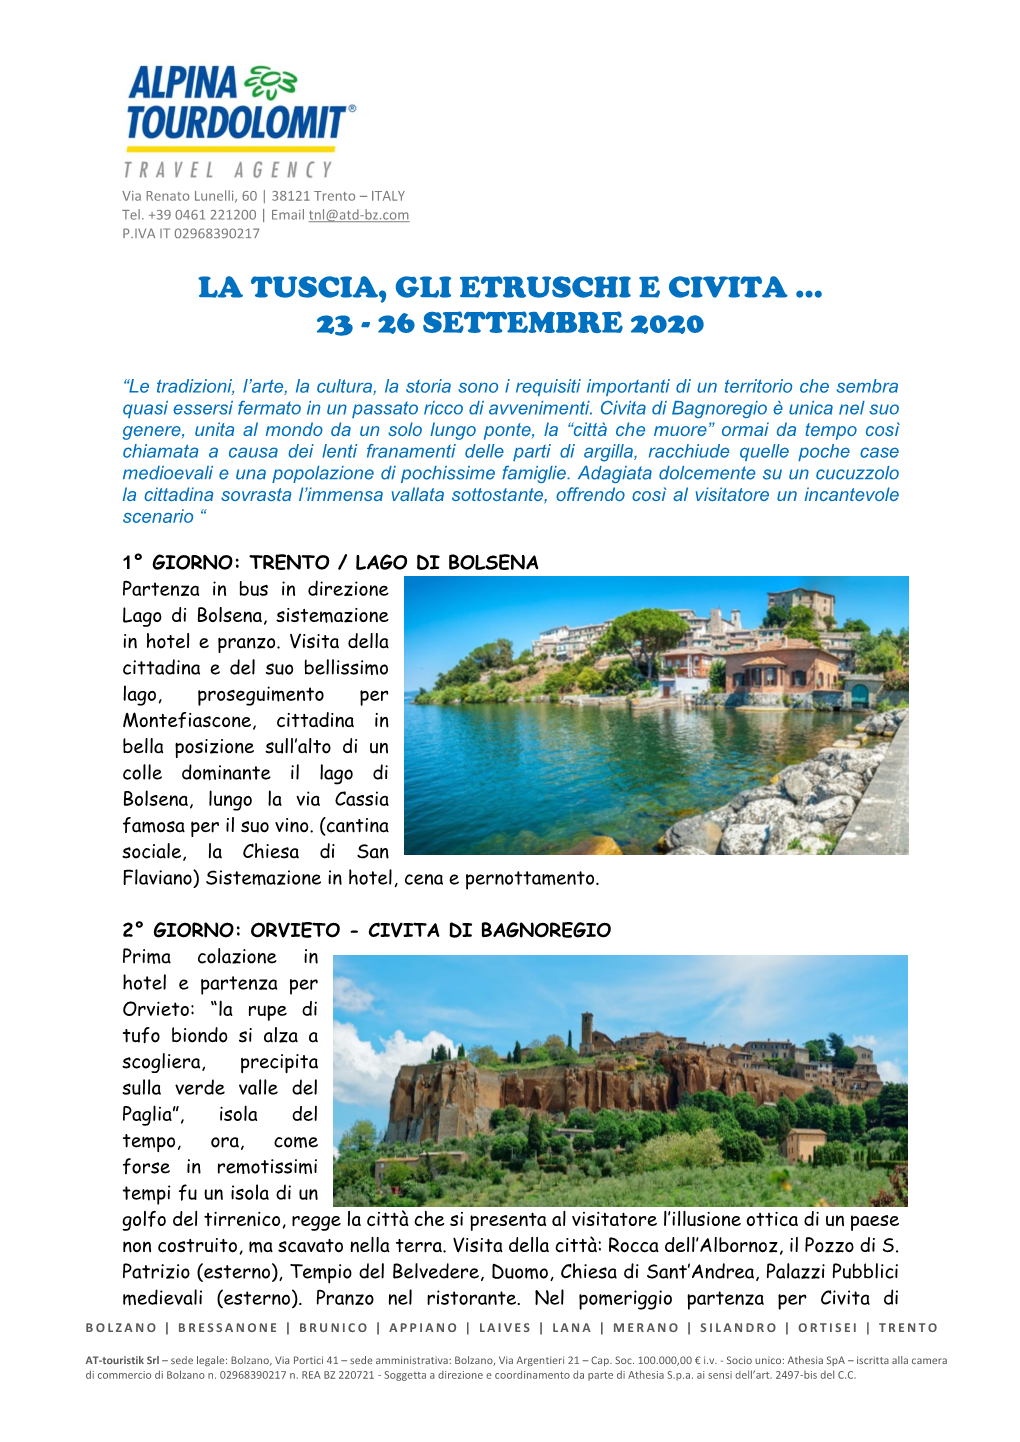 La Tuscia, Gli Etruschi E Civita … 23 - 26 Settembre 2020